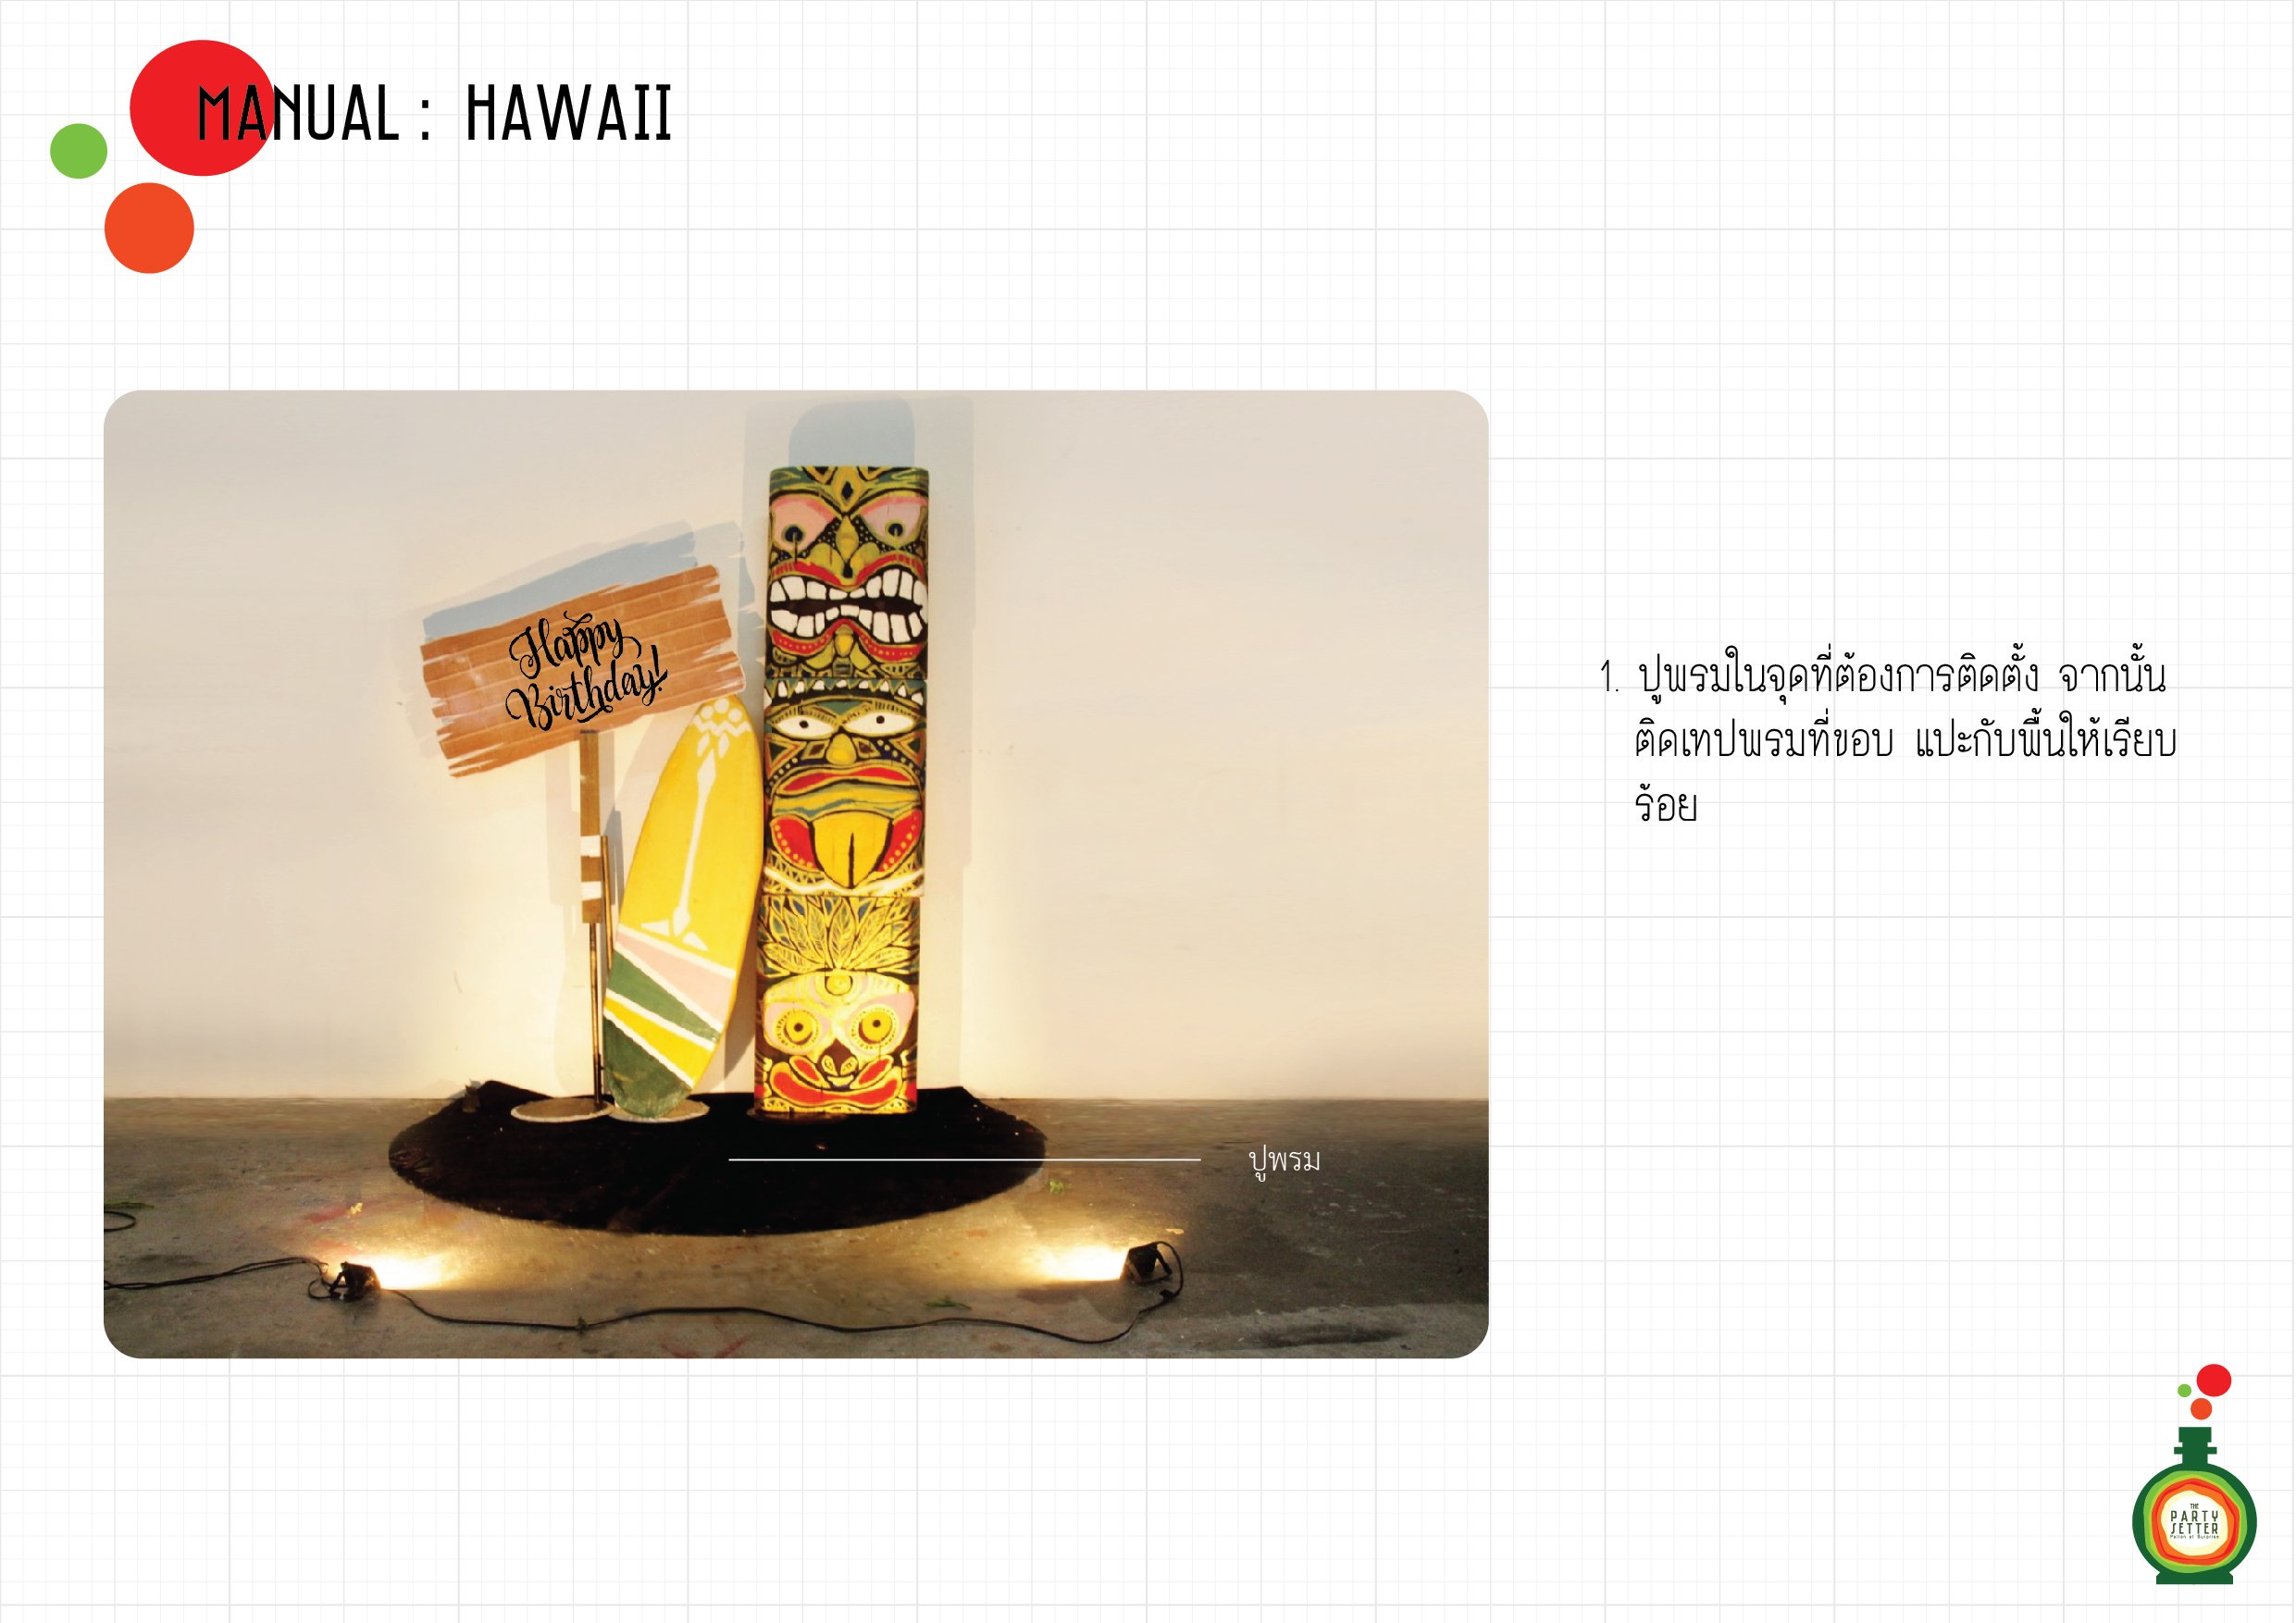 Manual_Hawaii-4-01-01.jpg